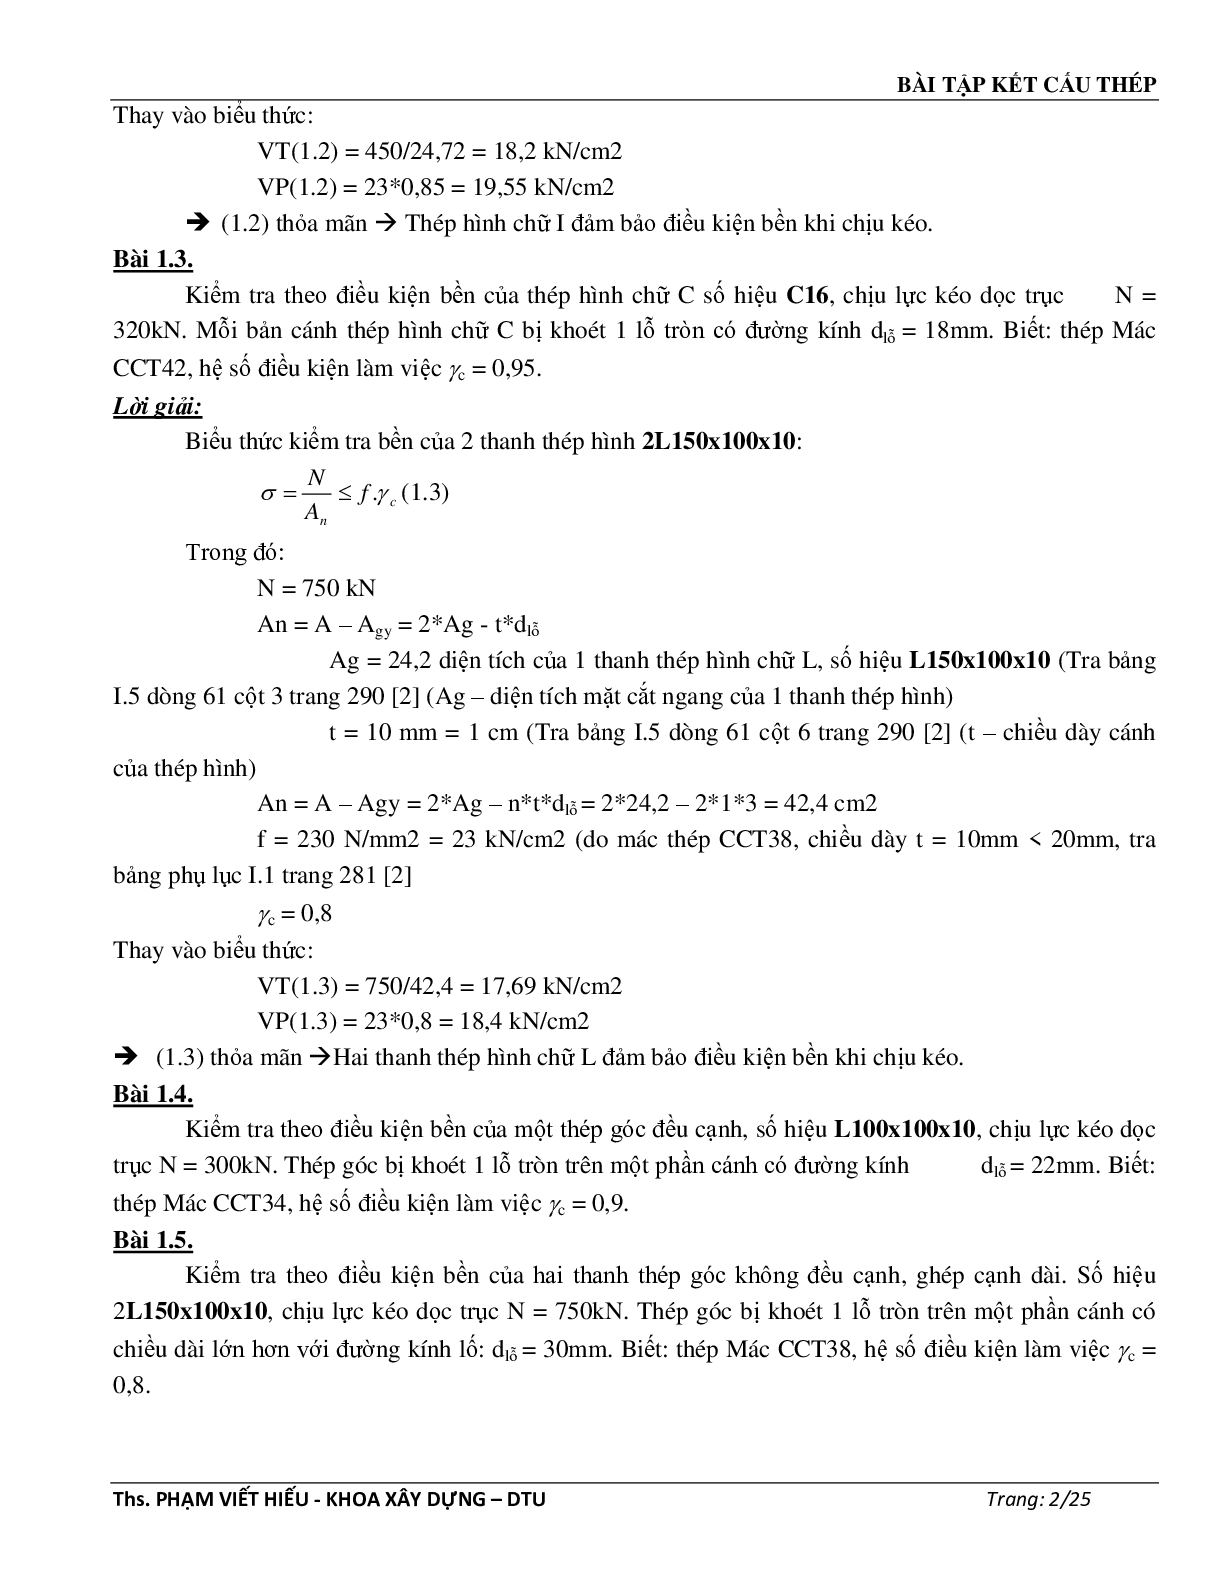 Ngân hàng bài tập môn Kết cấu thép (có đáp án) | Trường Đại học Duy Tân (trang 3)